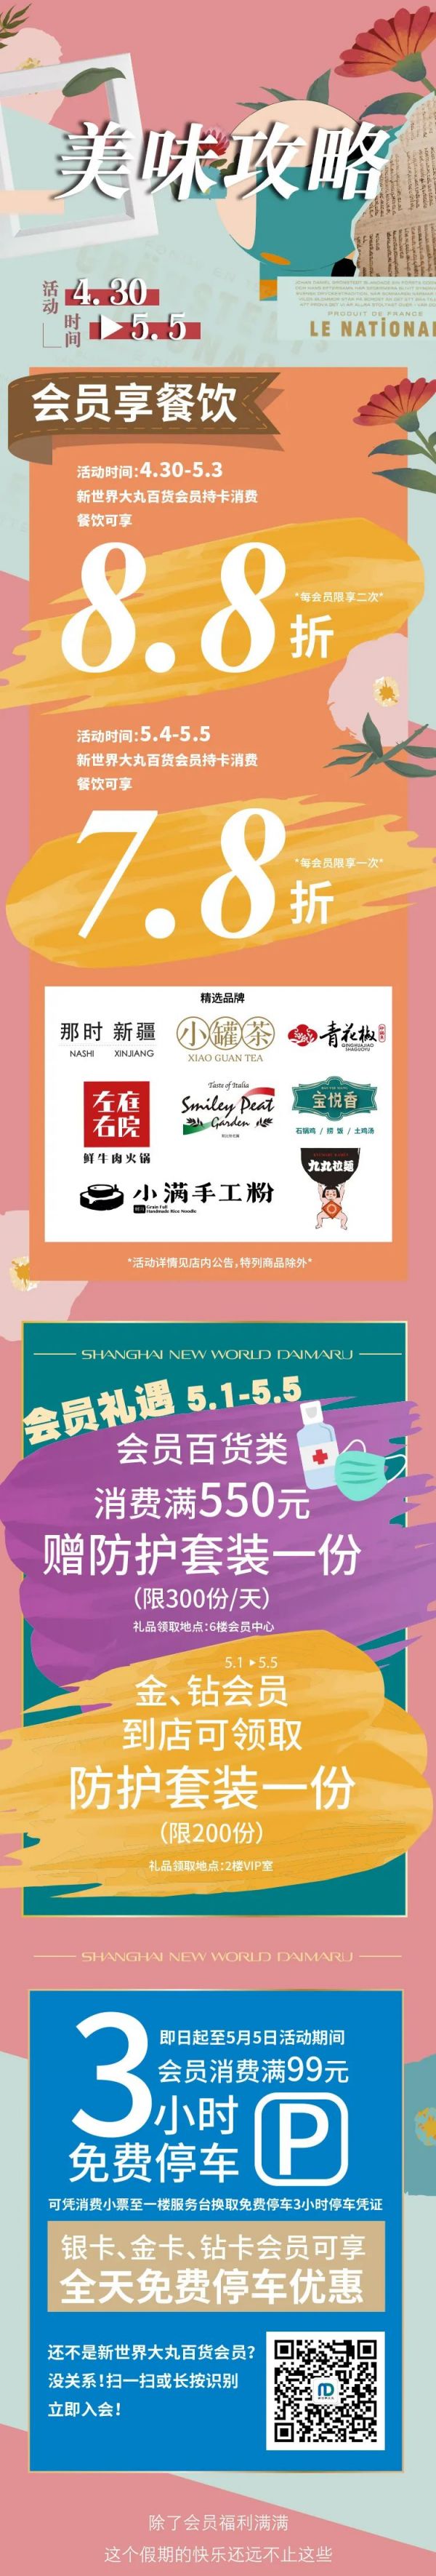 上海新世界大丸百貨2002五一折扣 一線化妝品首次8折